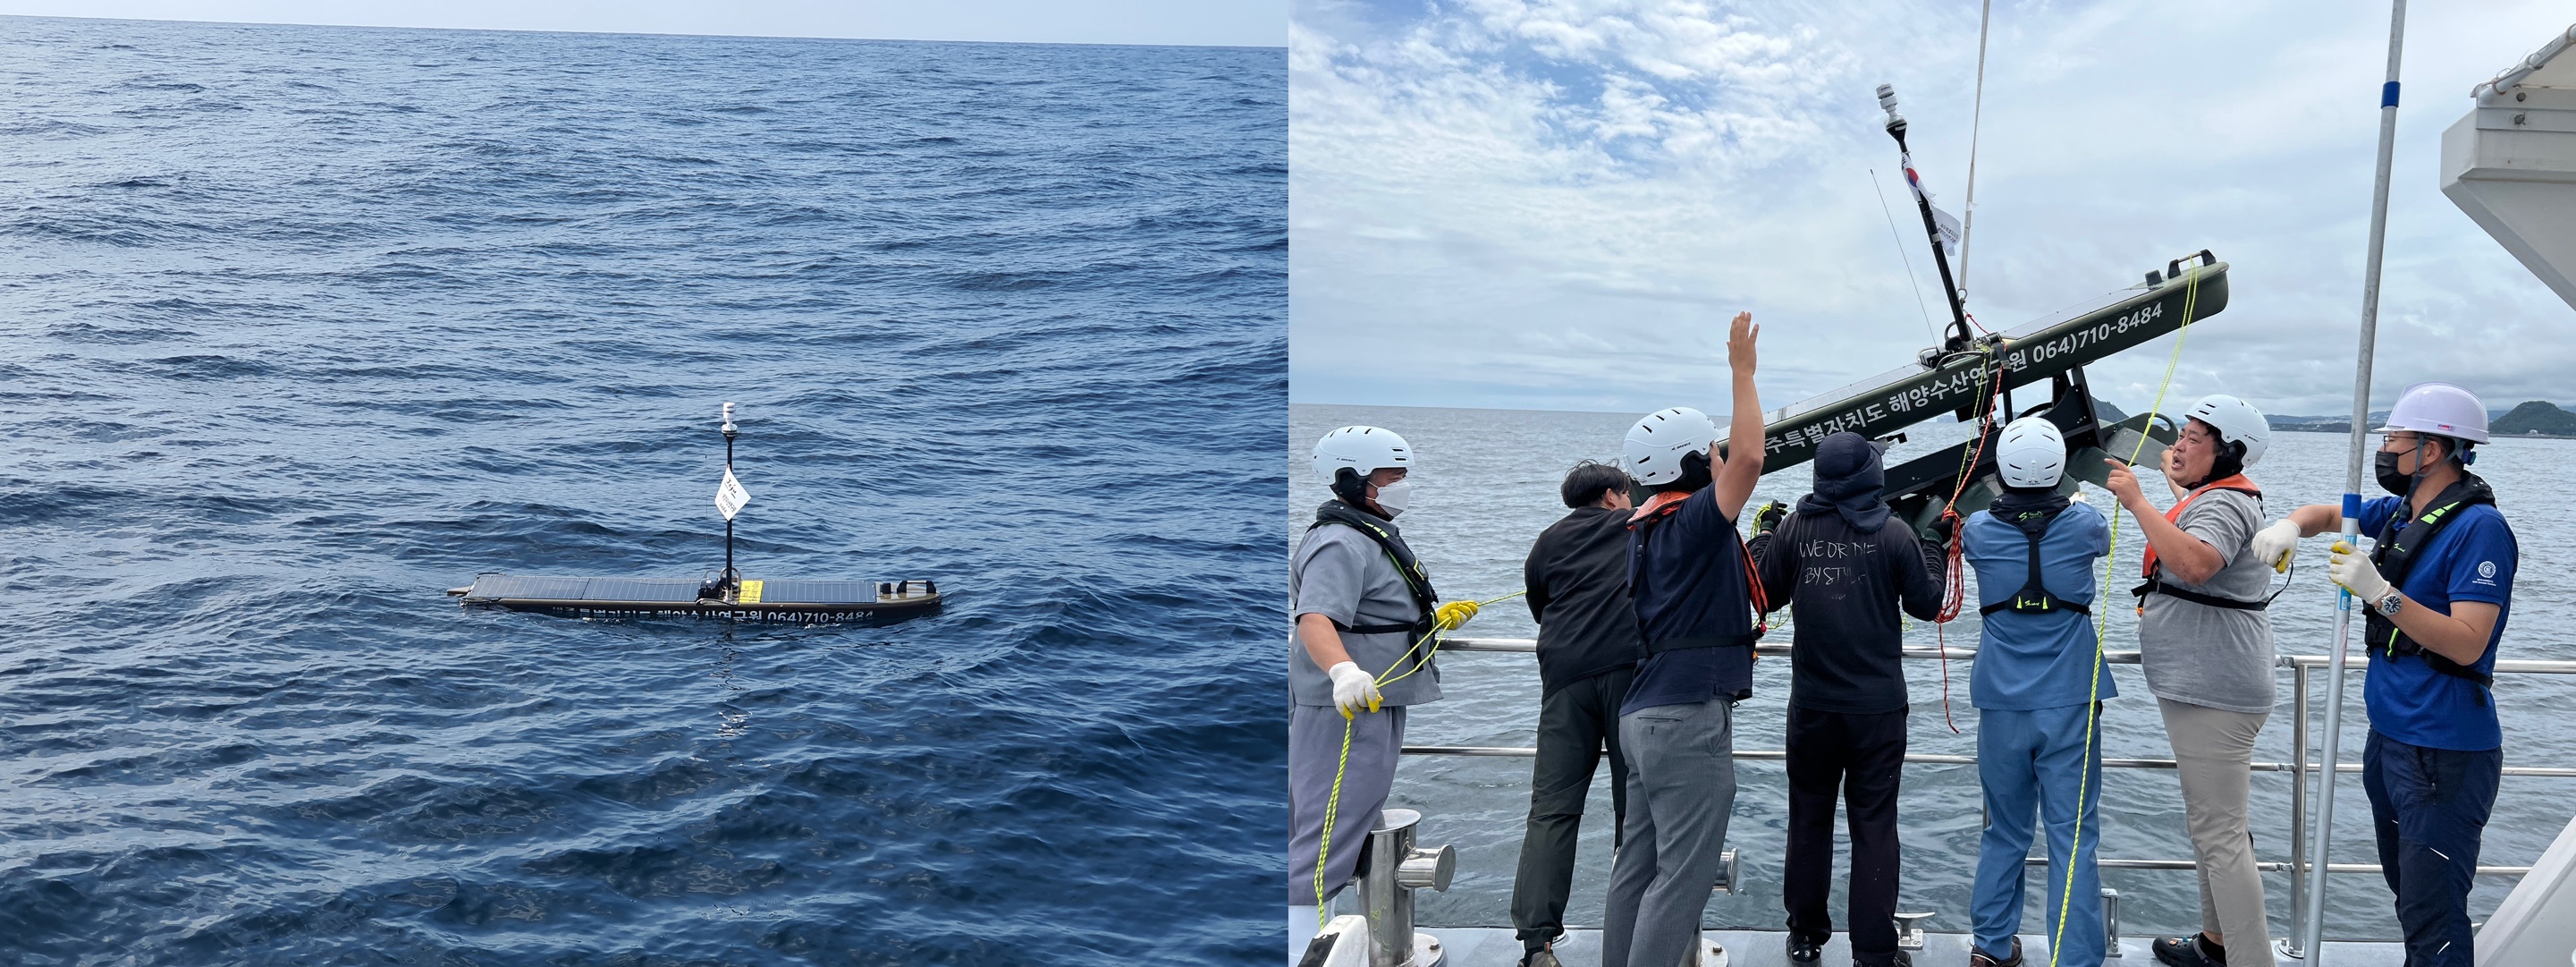 제주도 해양수산연구원이 고수온·저염분수 조사 위한 무인측정장치인 웨이브 글라이더(왼쪽)를 설치(오른쪽)하는 모습.  -제주도 해양수산연구원 제공 